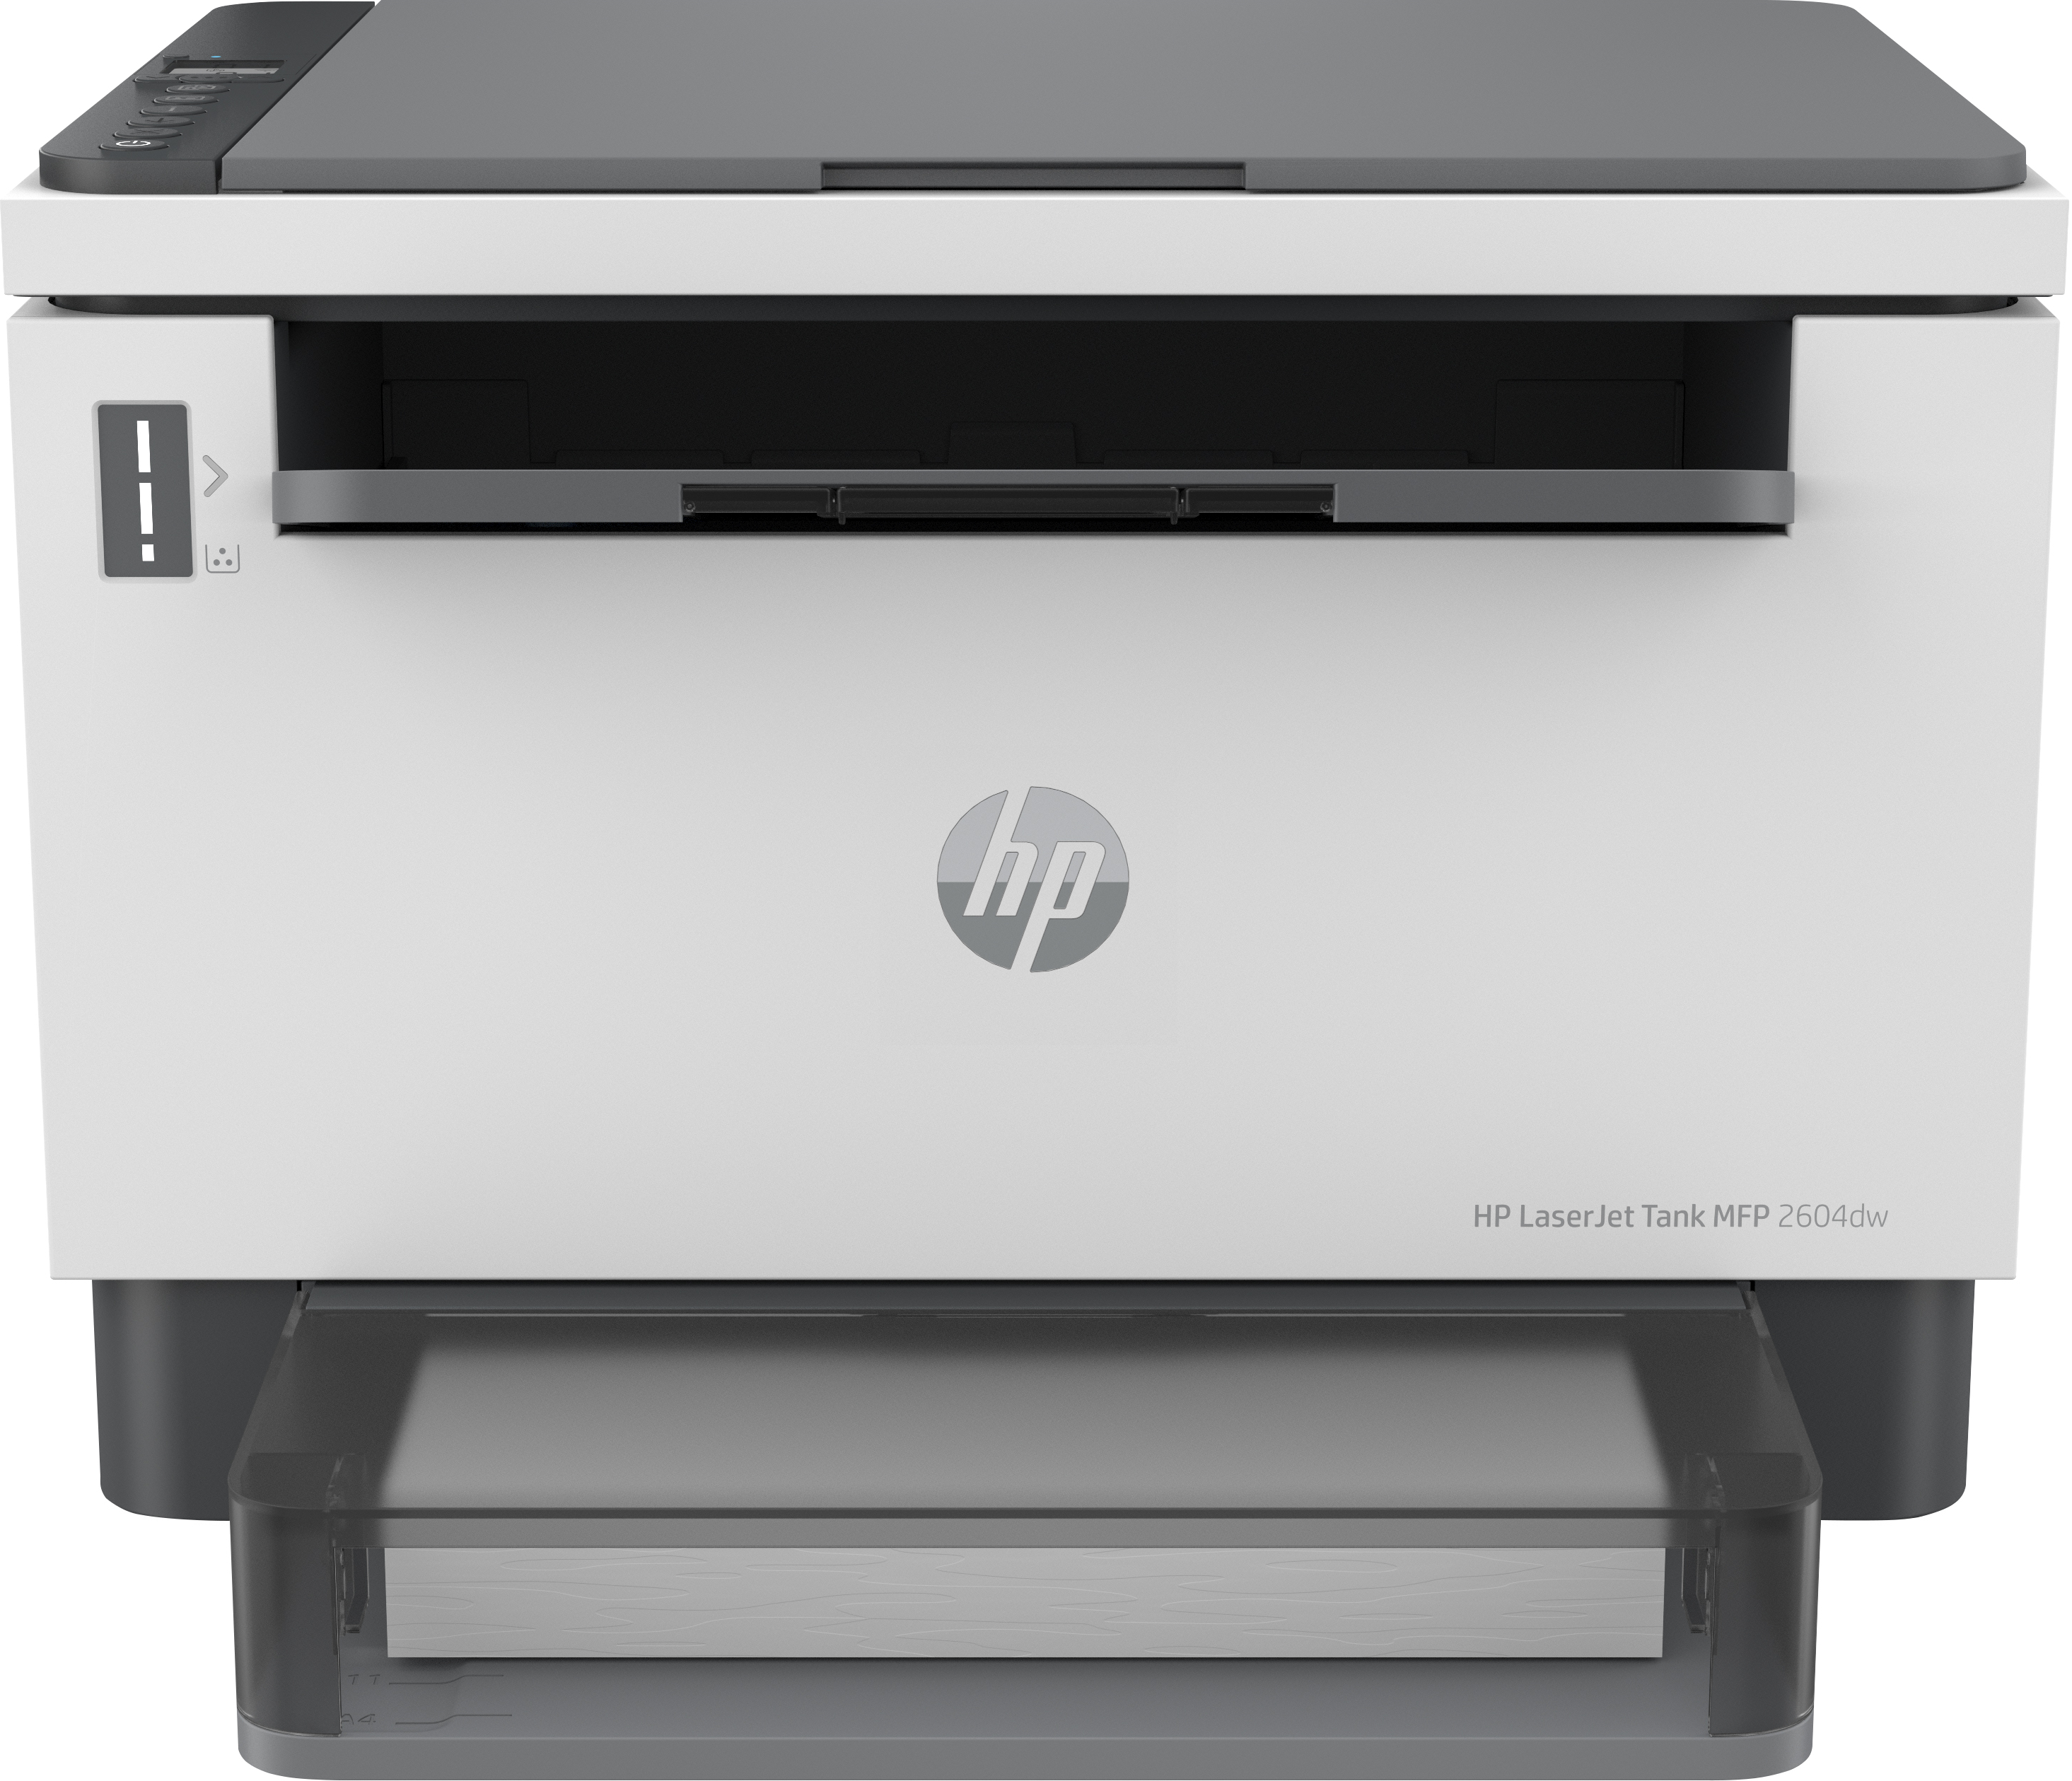 HP LaserJet Imprimante Tank MFP 2604dw, Noir et blanc, Imprimante pour Entreprises, Sans fil. Impression recto-verso. Numérisation vers e-mail. Numériser vers PDF